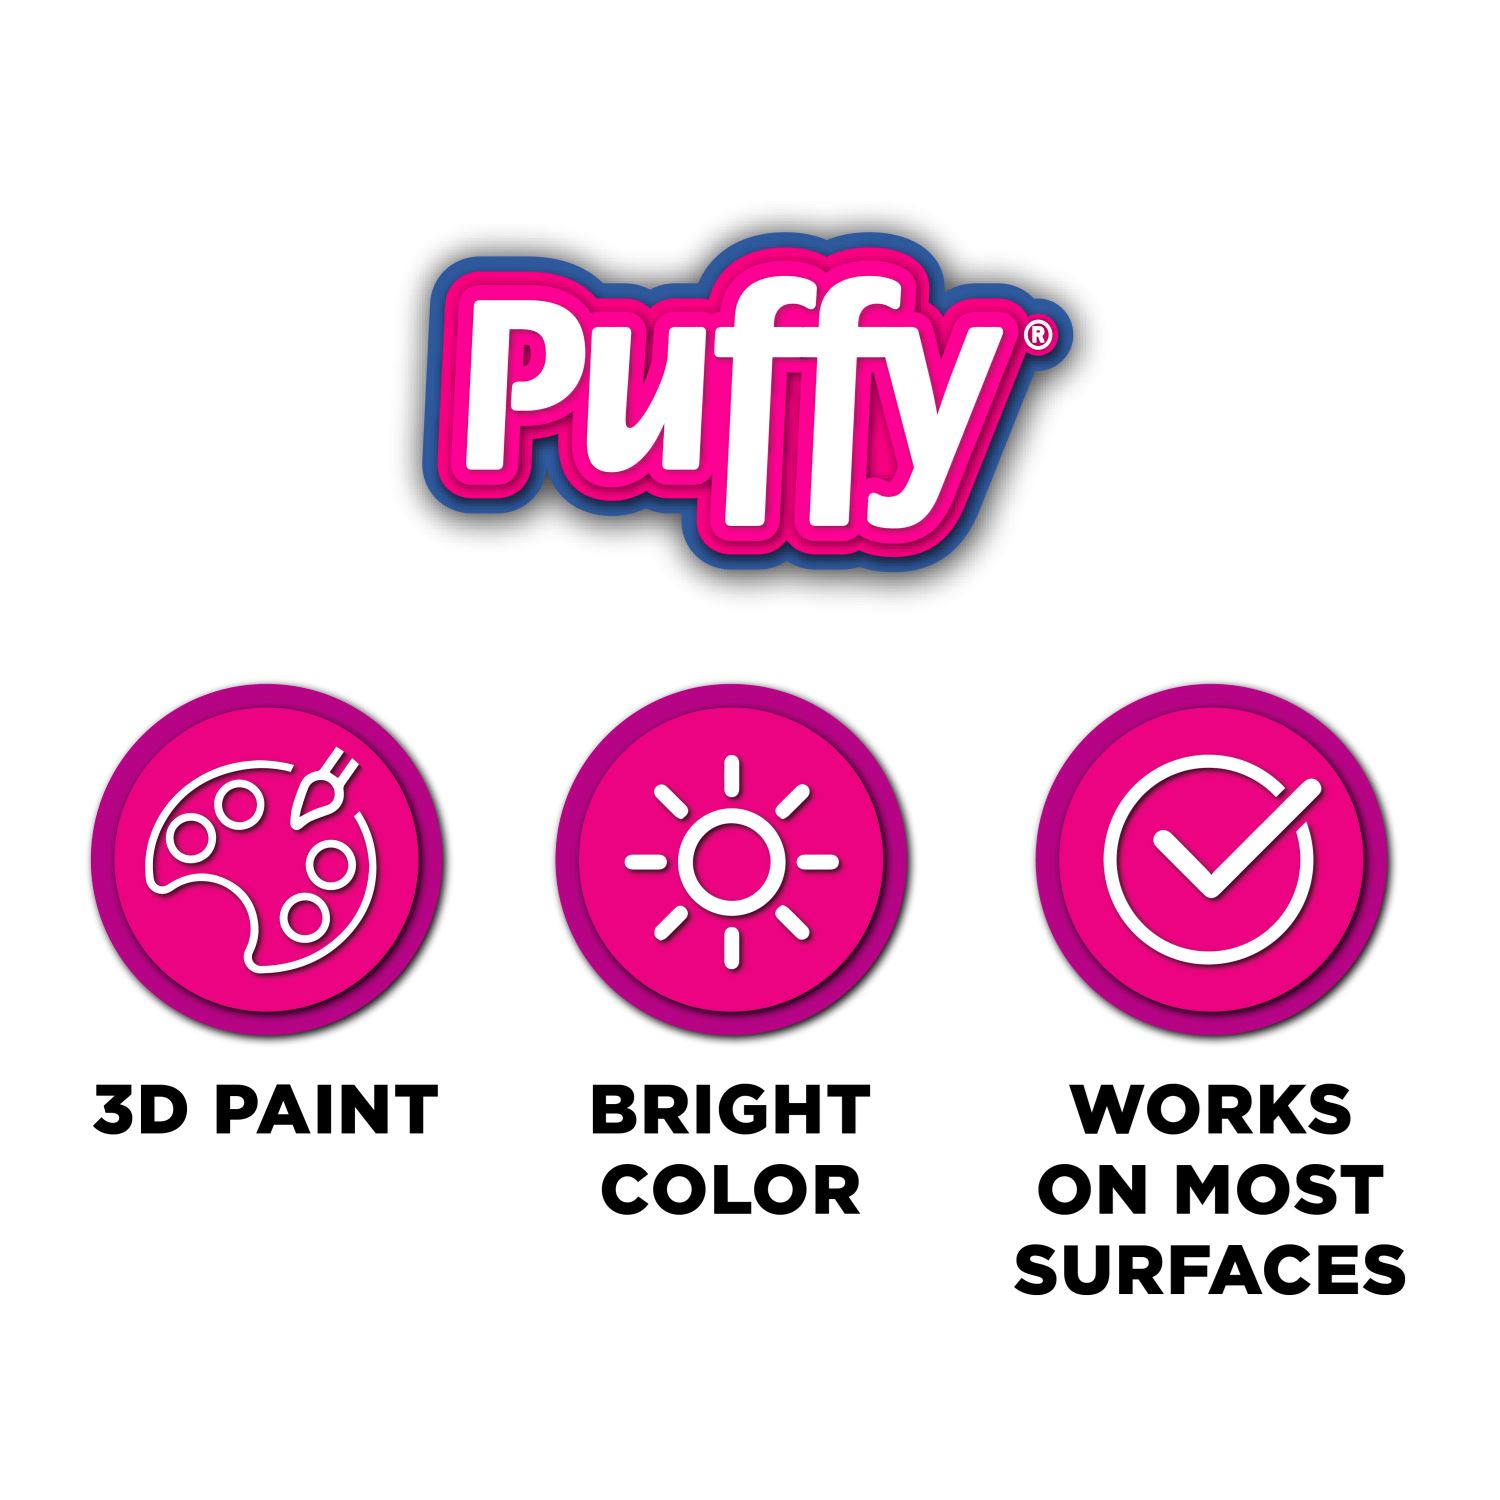 Puffy 4.25 fl oz 3D Paint Black, Multi-Surface 